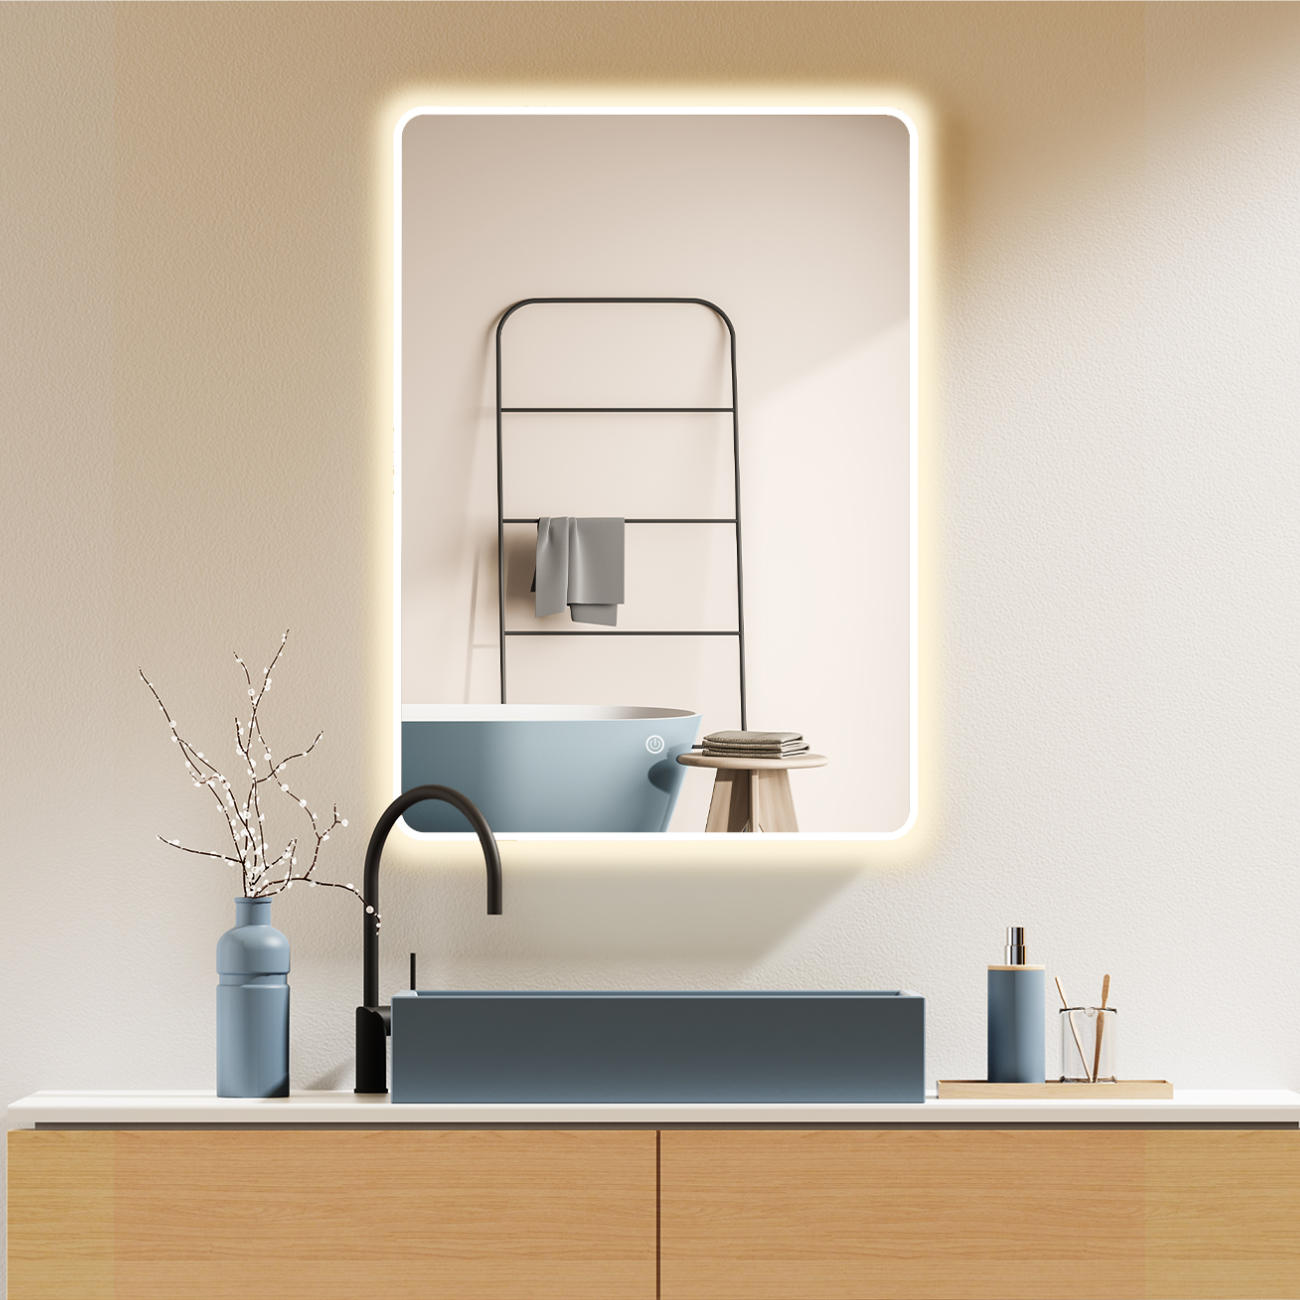 LED Badspiegel, Spiegel mit Beleuchtung, Weißer Metall Rahmen